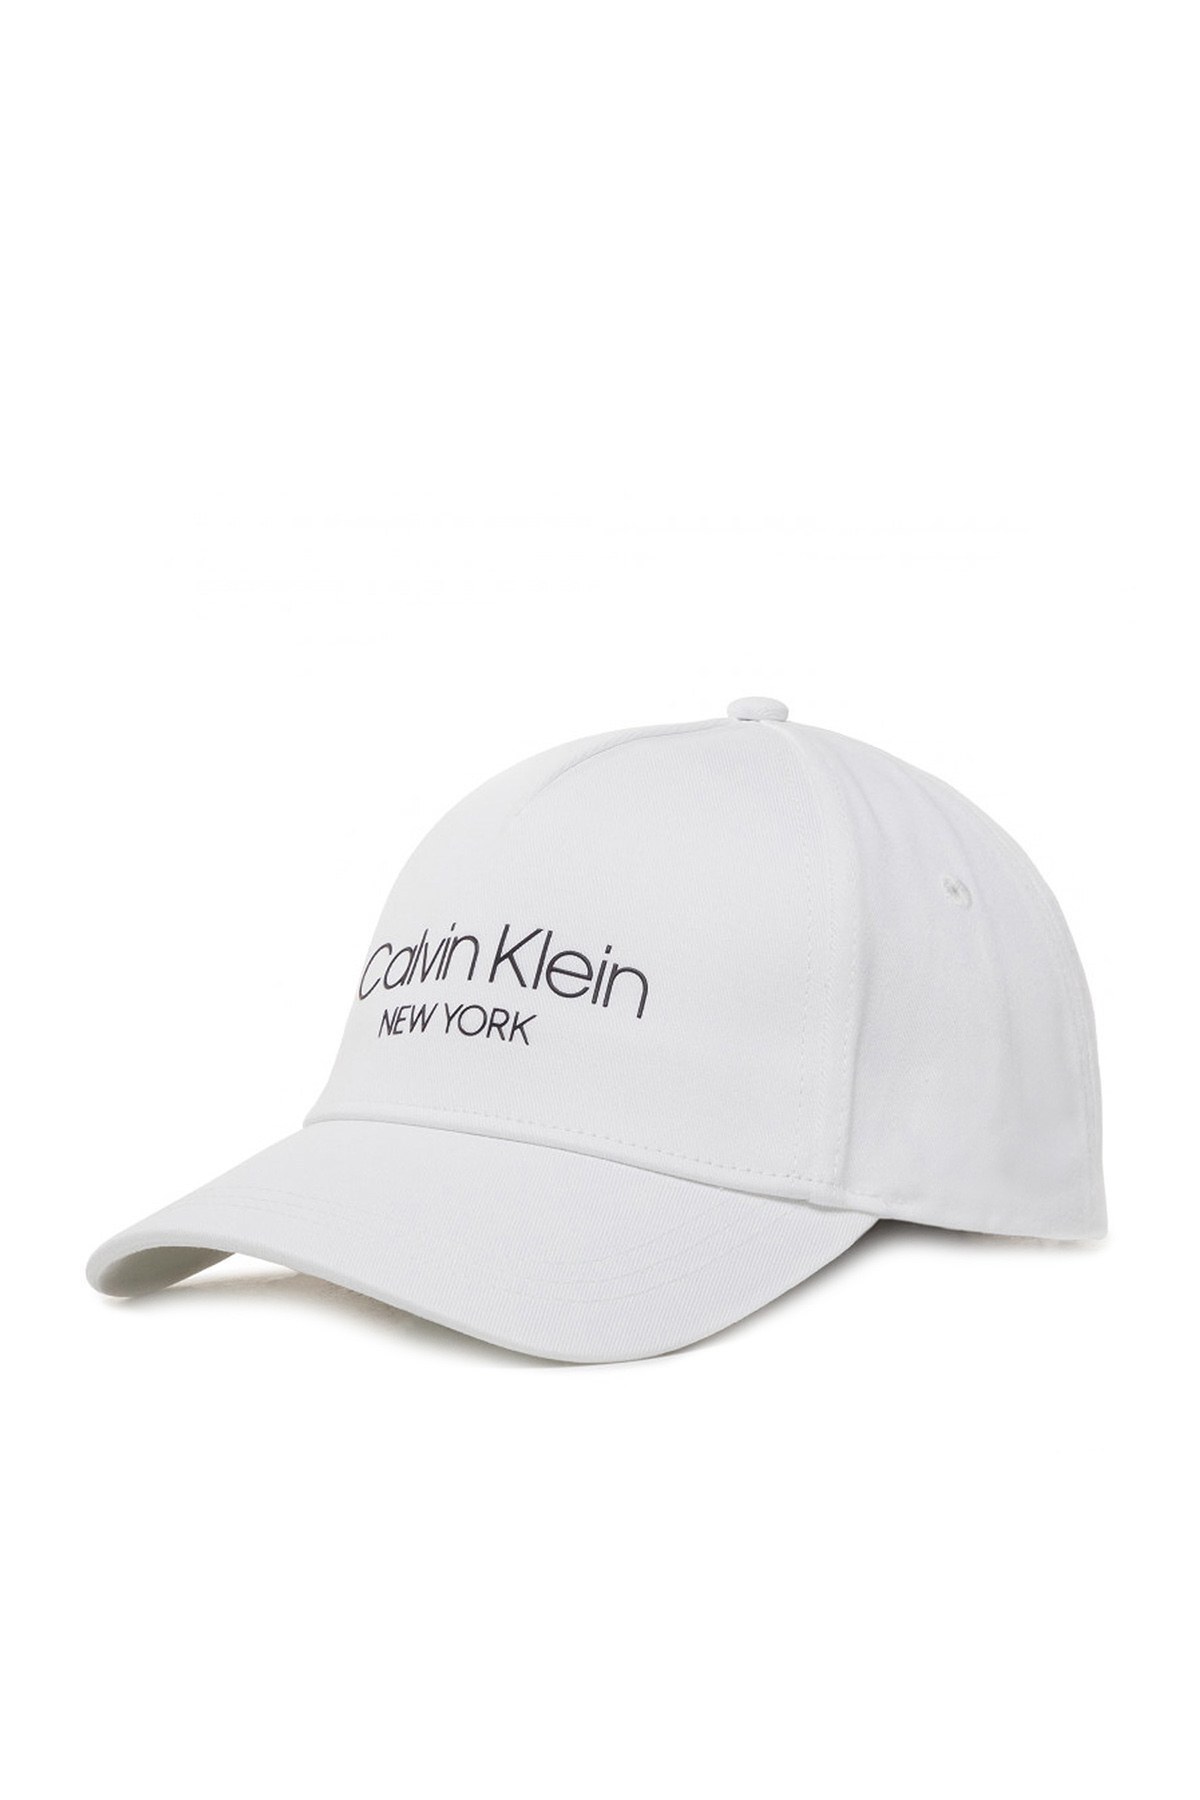 Calvin Klein Pamuklu Kadın Şapka K60K606381 YAF BEYAZ